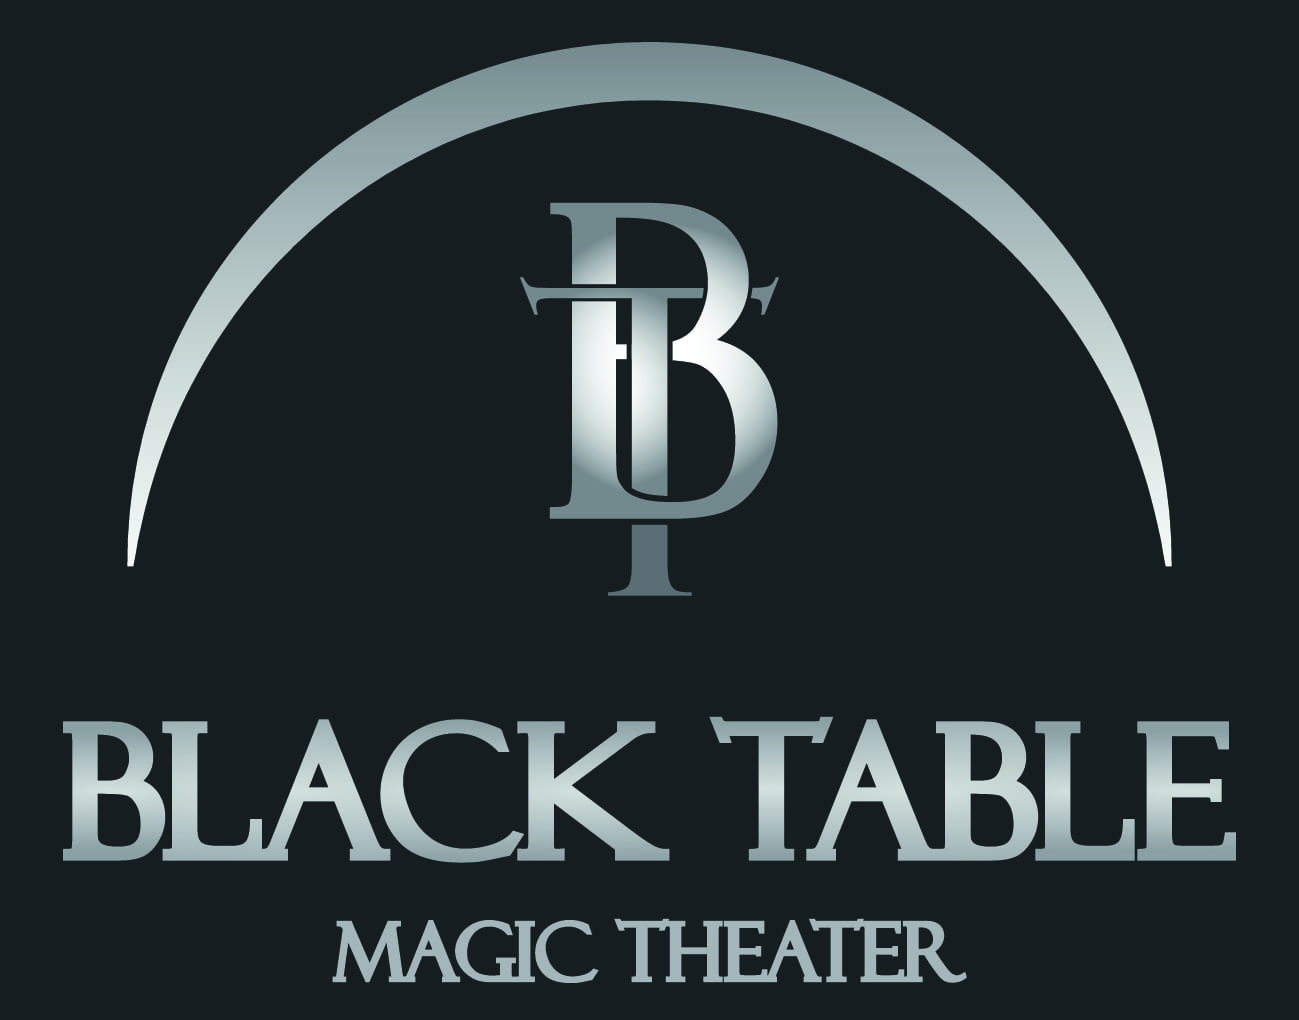 Black Table Magic Theater, Aachen